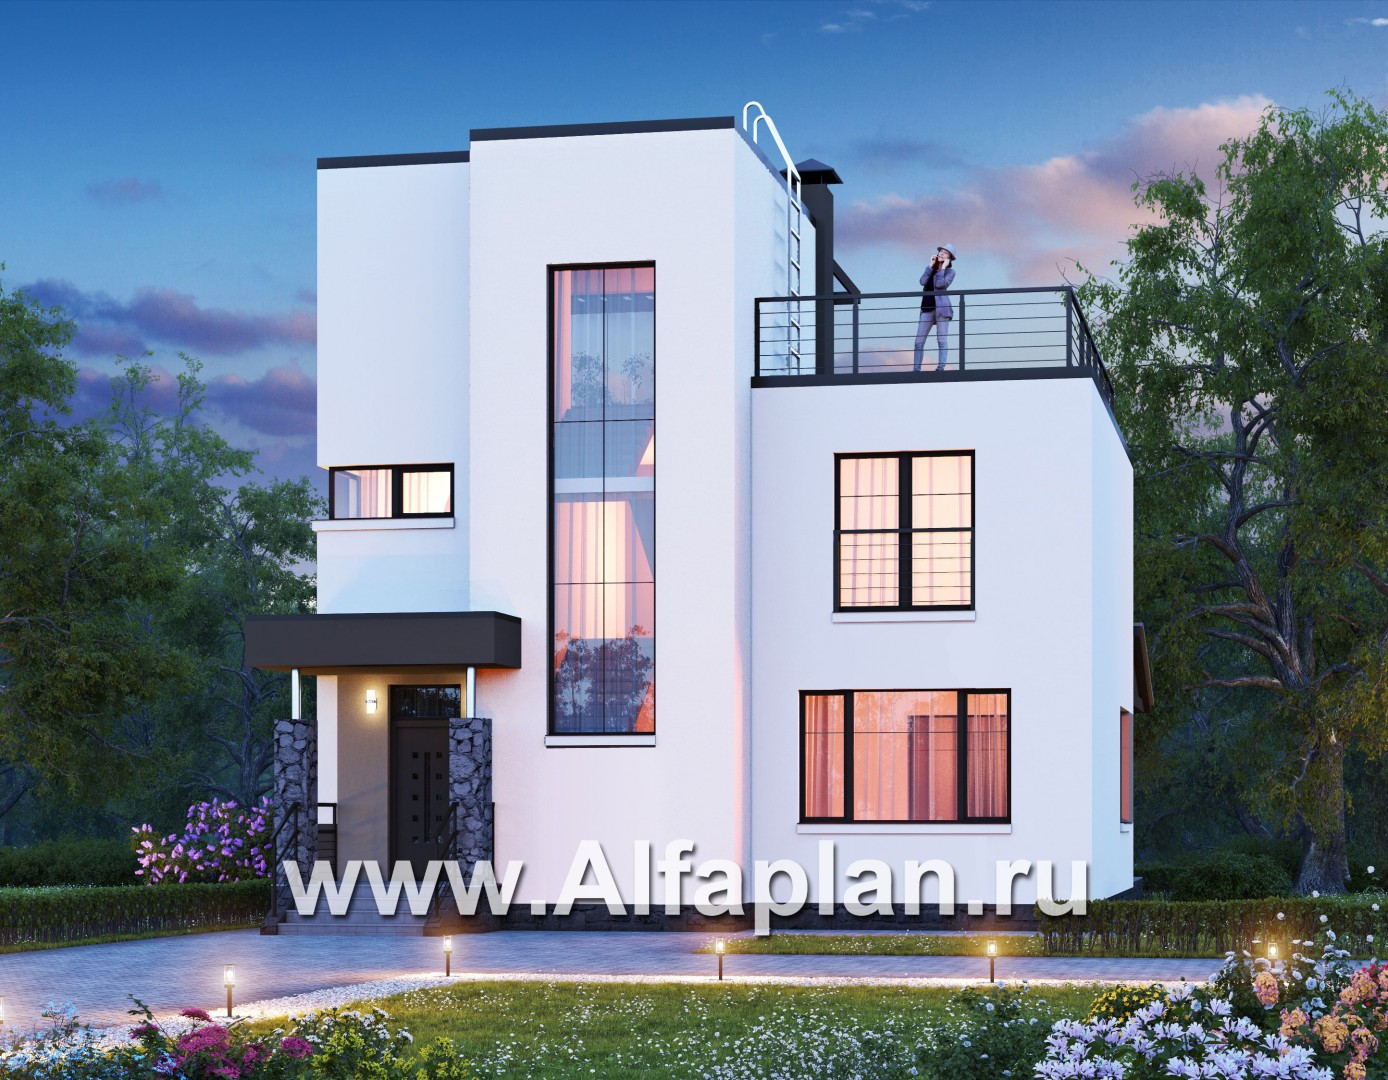 Проекты домов Альфаплан - «Приоритет» - проект двухэтажного дома из газобетона, с открытой планировкой,  с эксплуатируемой крышей, в стиле хай-тек - дополнительное изображение №2